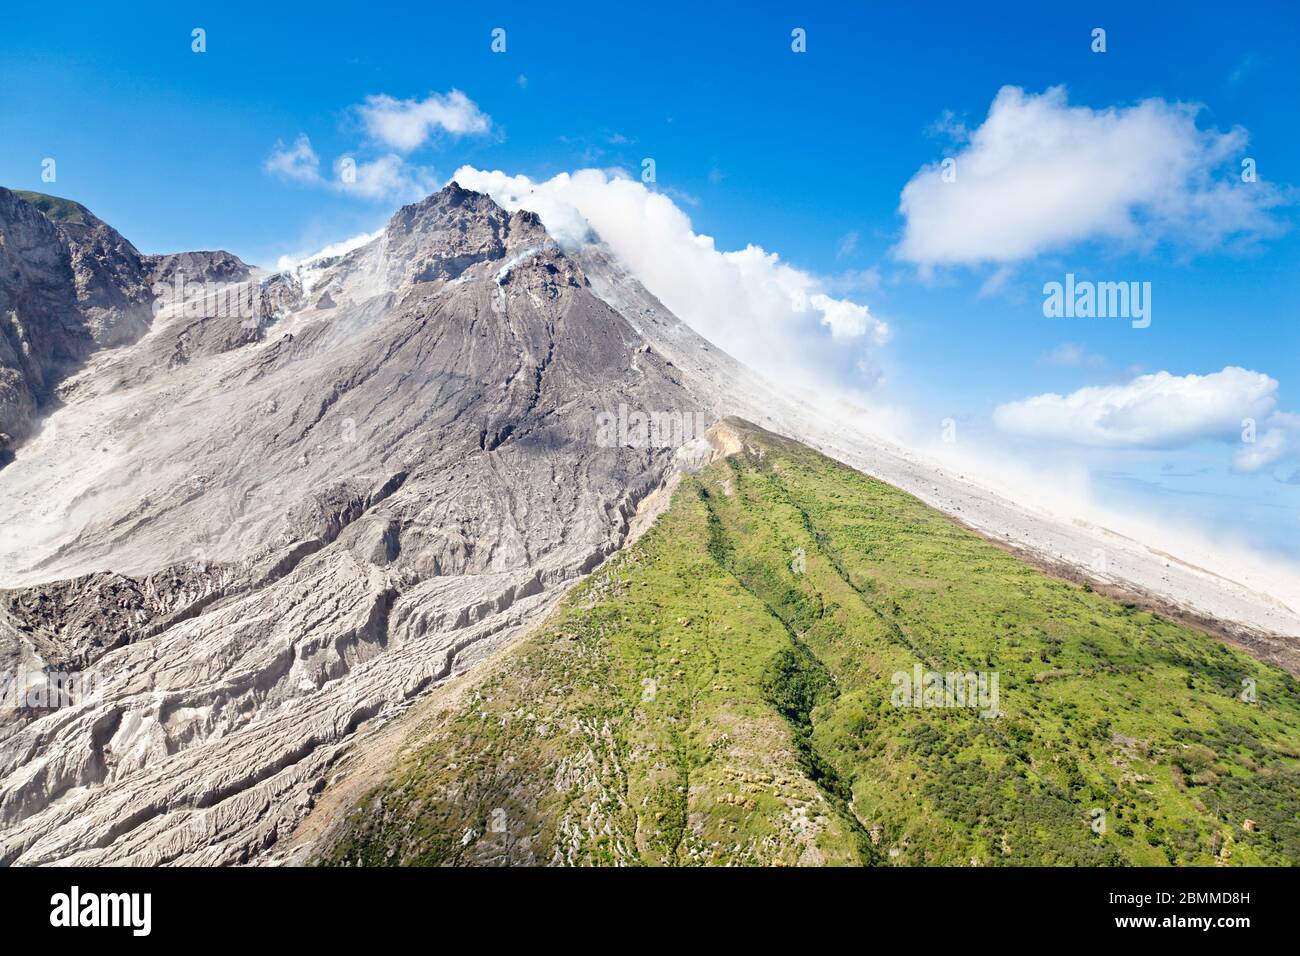 Der aktive Vulkan Soufriere Hills in Montserrat vom Hubschrauber aus gesehen. Die tote Landschaft wird häufig von neuen pyroklastischen Strömungen bedeckt. Stockfoto